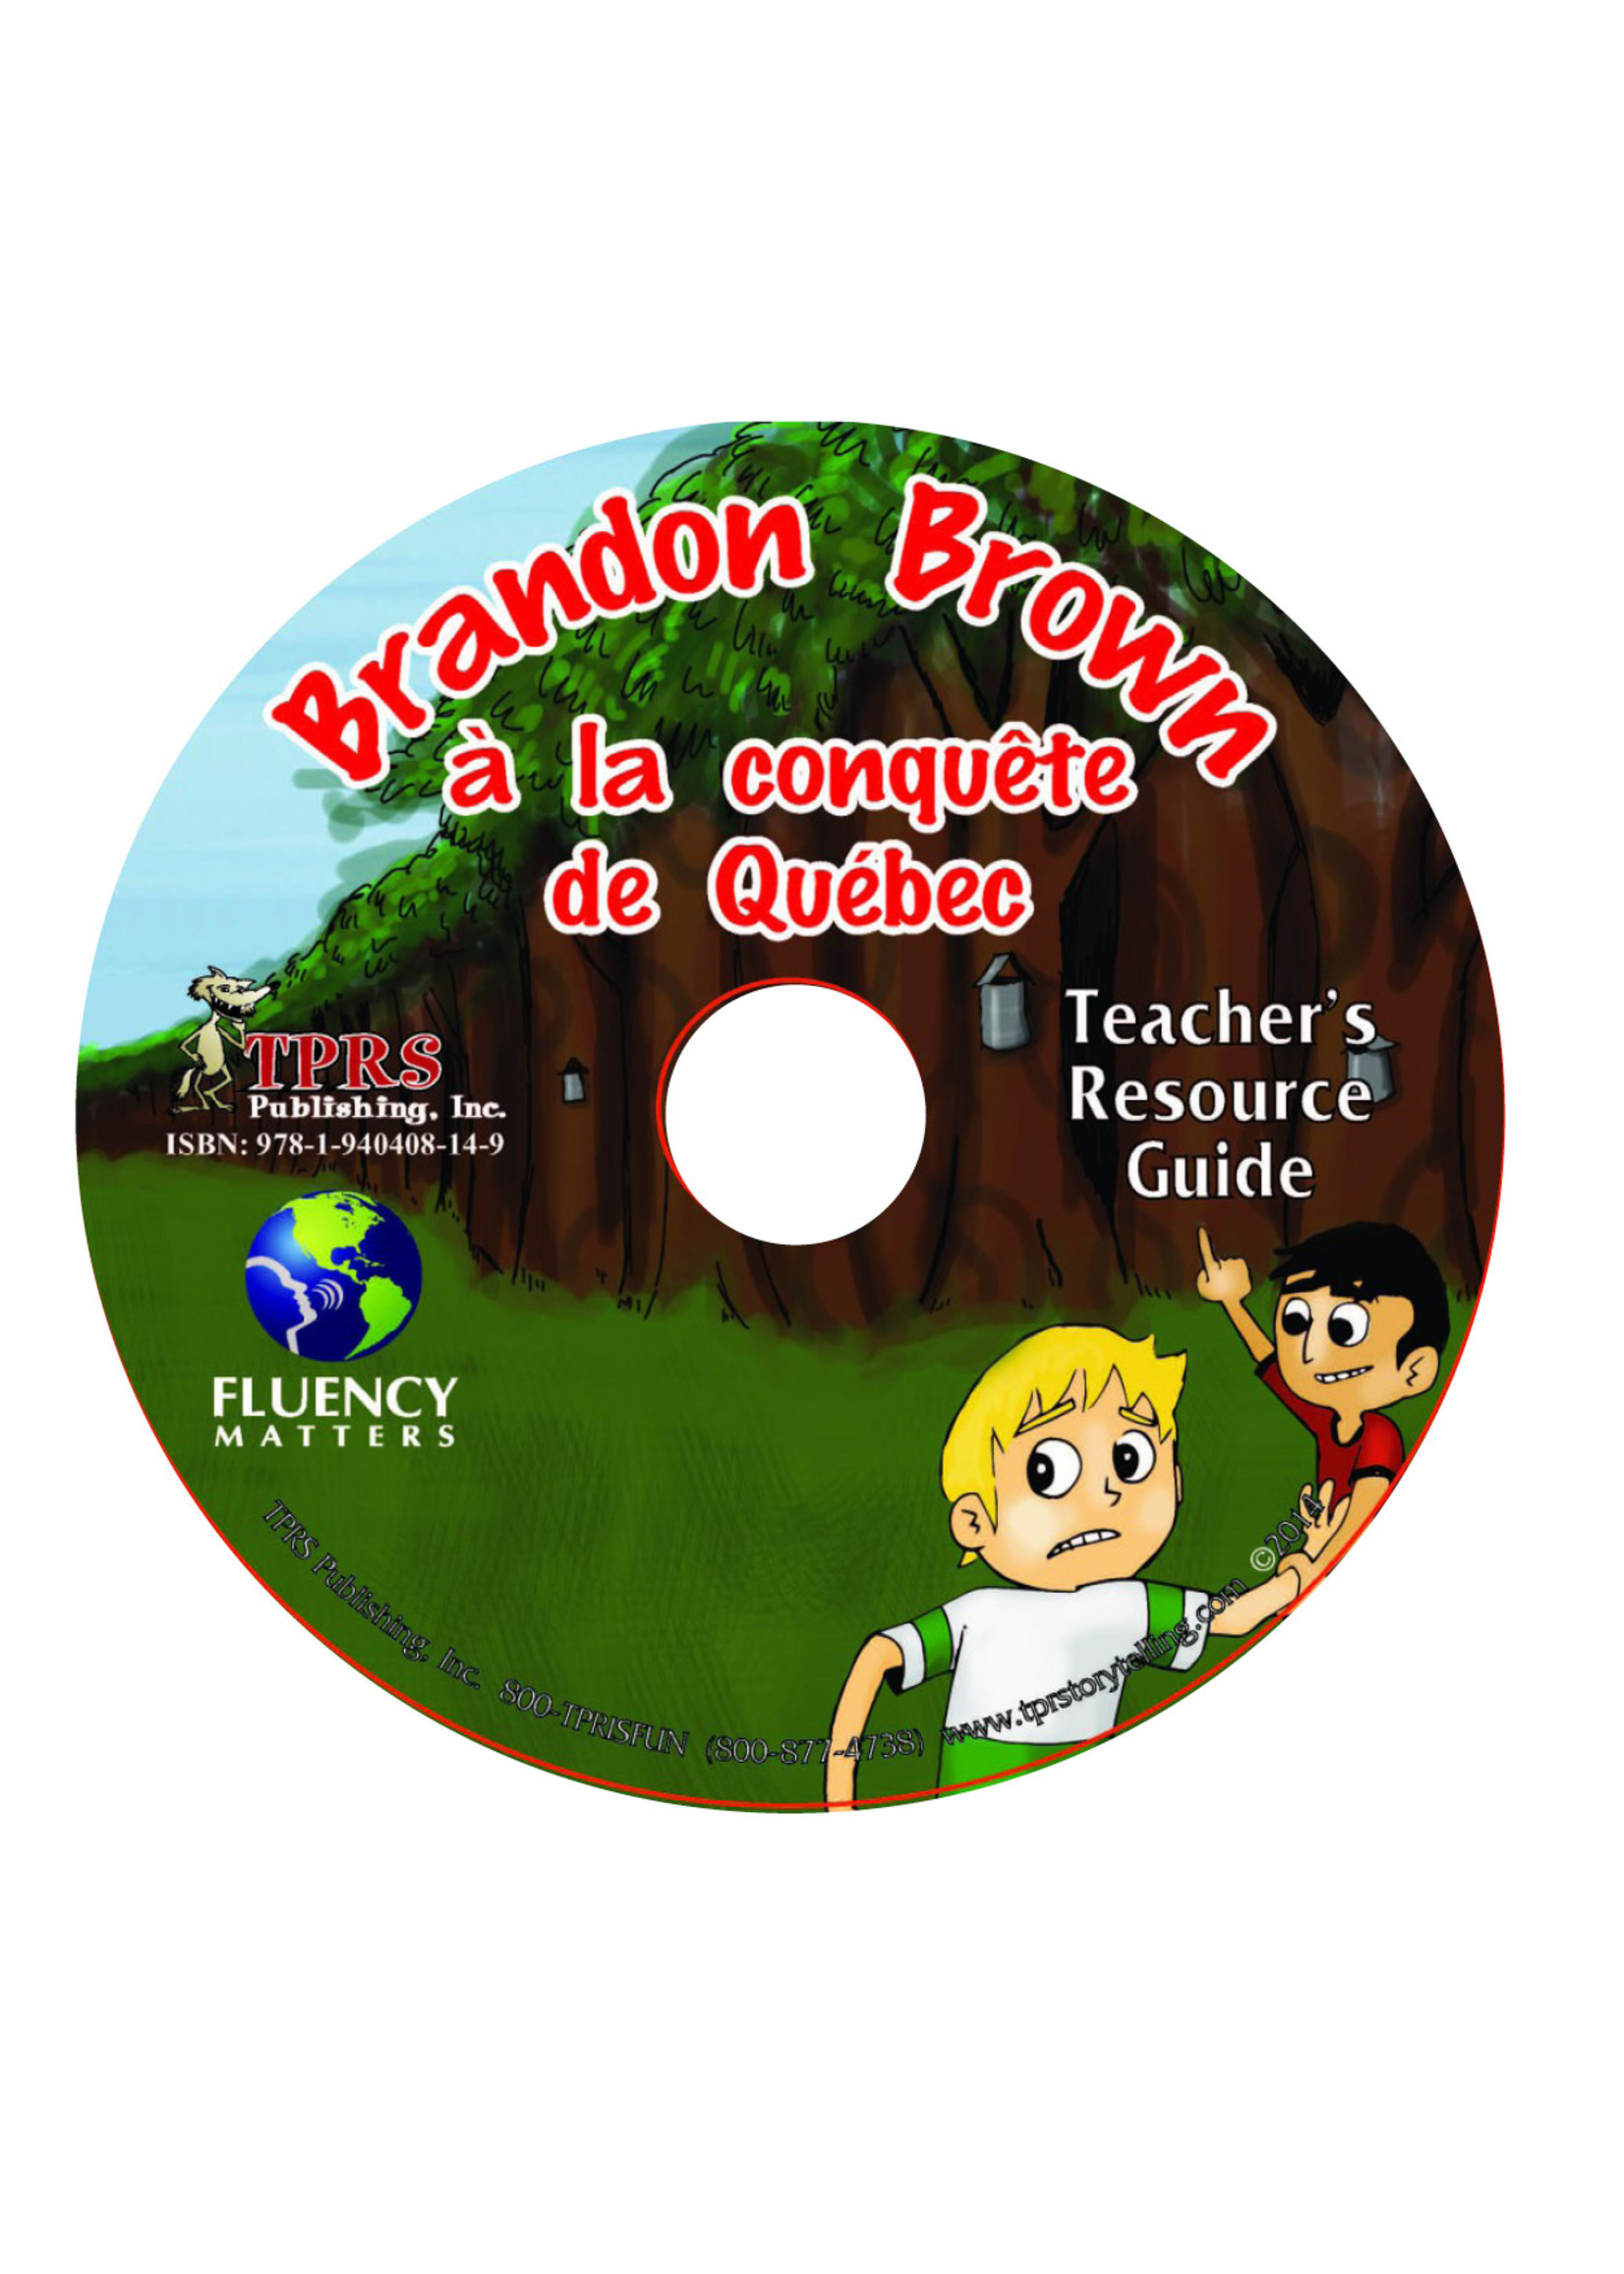 Brandon Brown à la conquête de Québec  - Teacher's Guide on CD